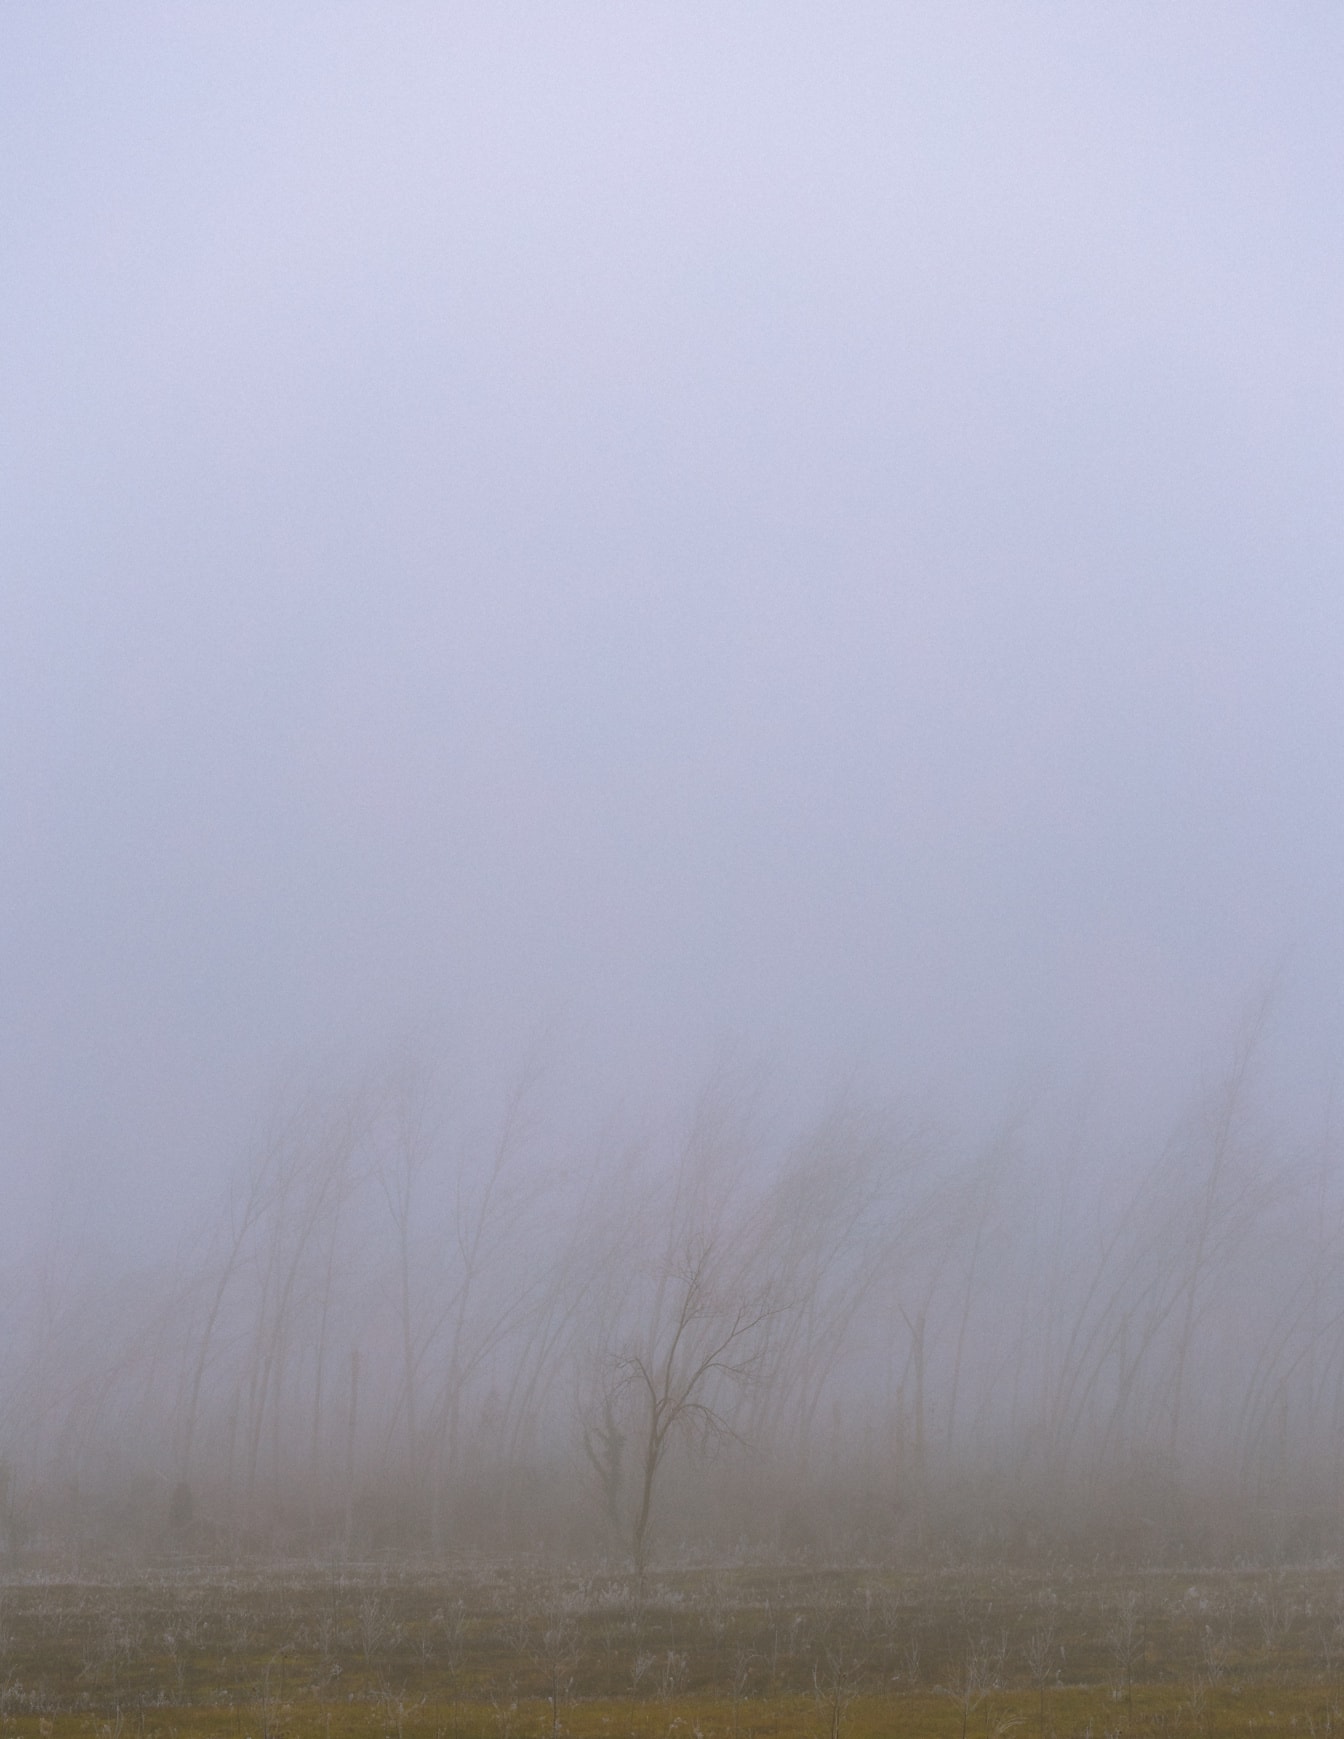 雾蒙蒙的景观，背景是树木